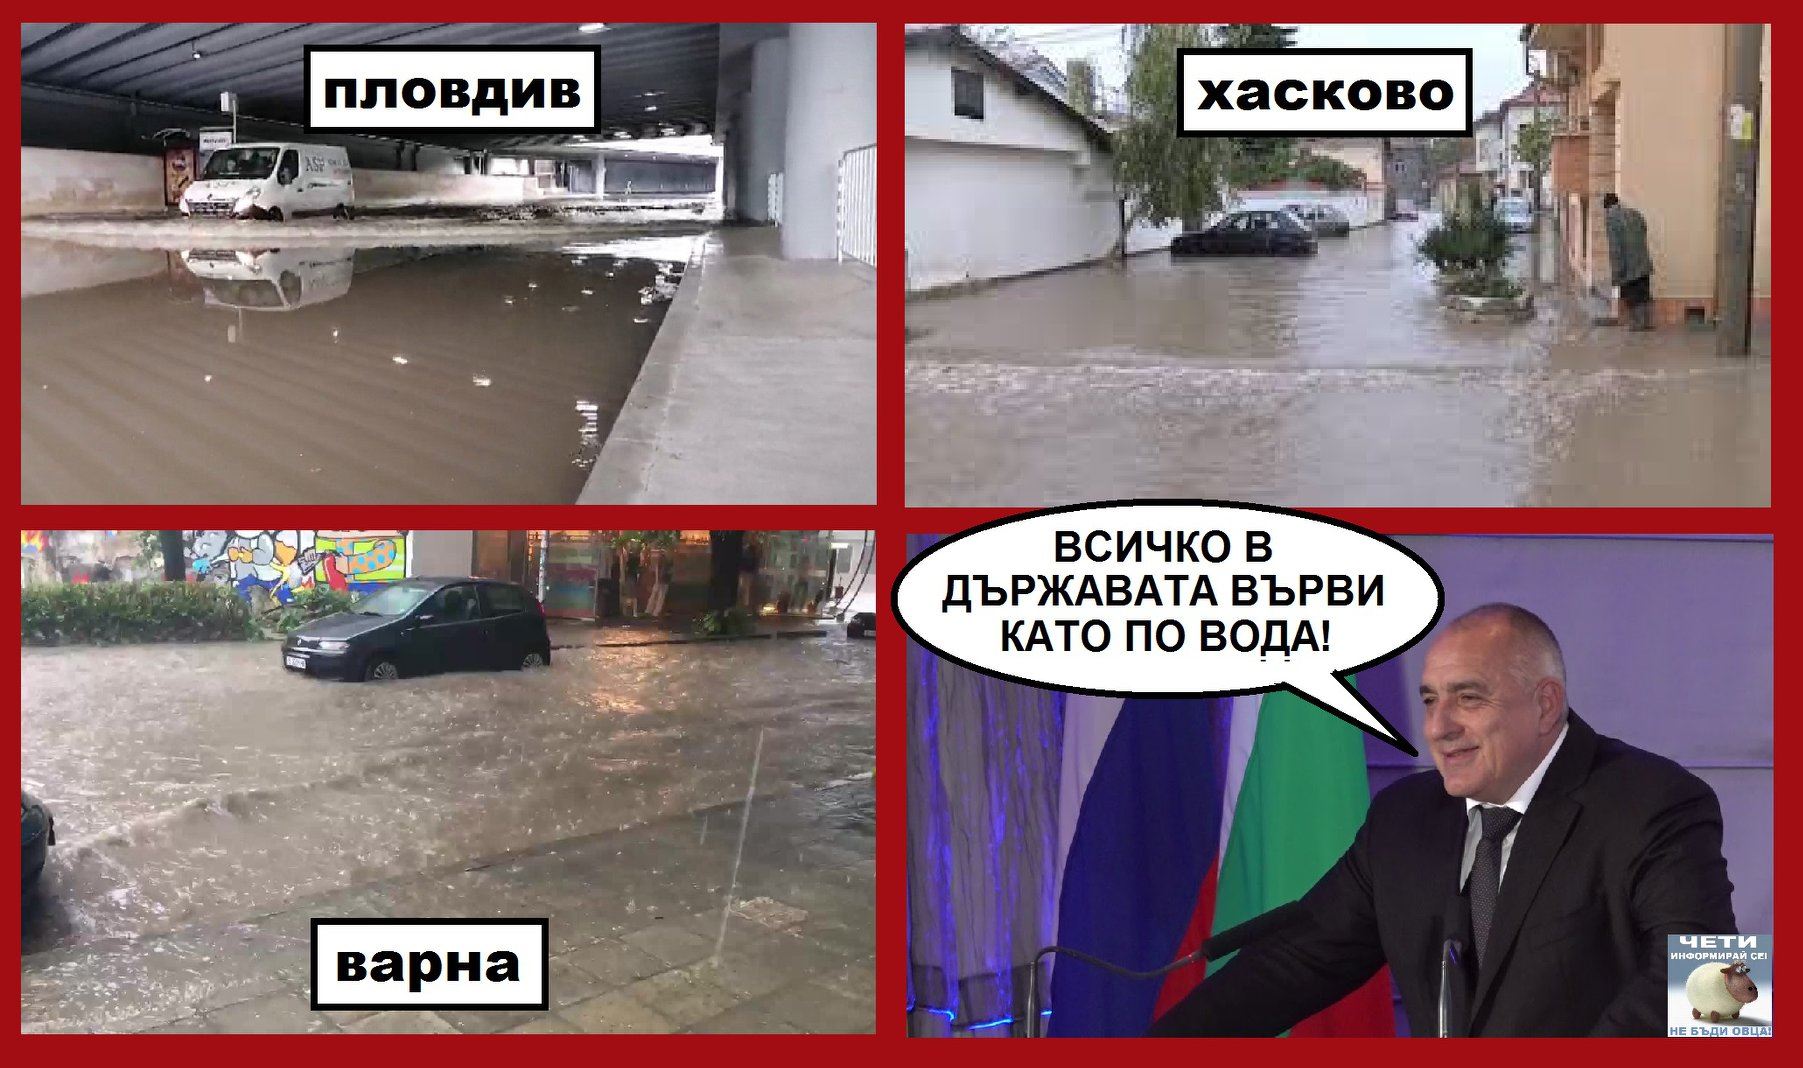 Пловдив, Хасково, Варна, всичко в държавата върви като по вода<br />